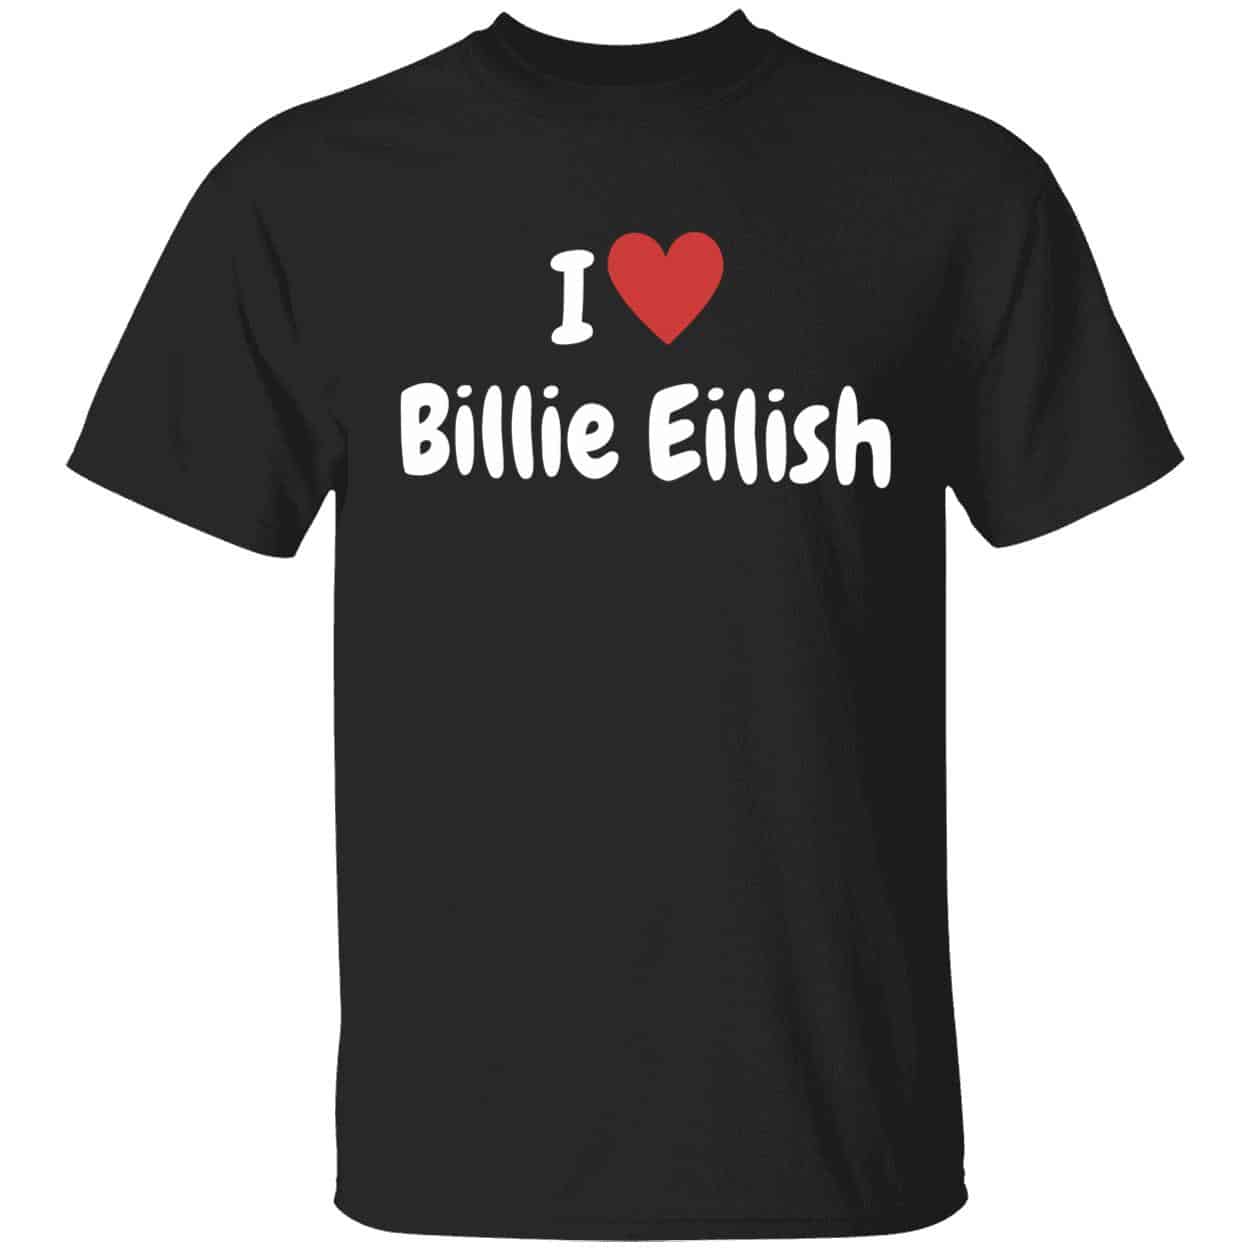 Billie Eilish Dodgers Jersey